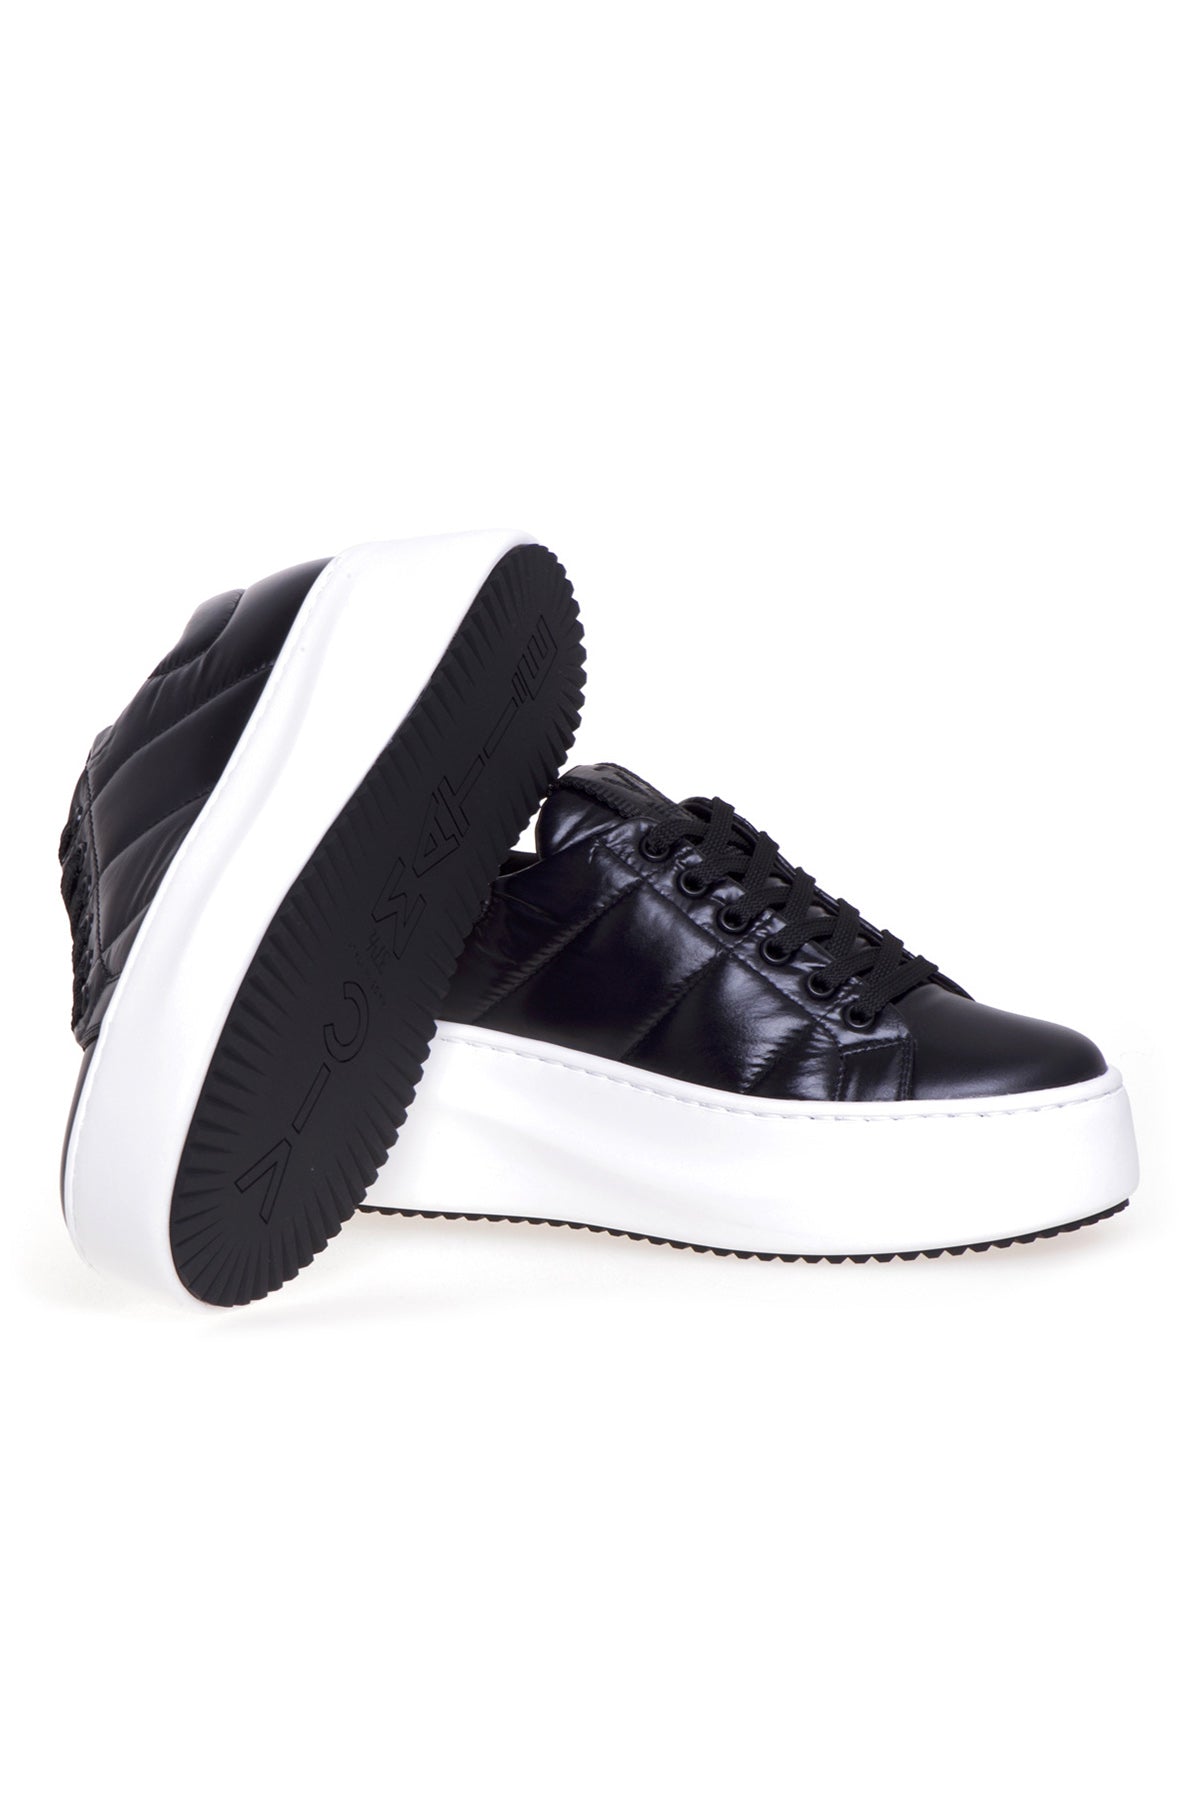 Vic Matie Dolgulu Deri Sneaker Ayakkabı-Libas Trendy Fashion Store